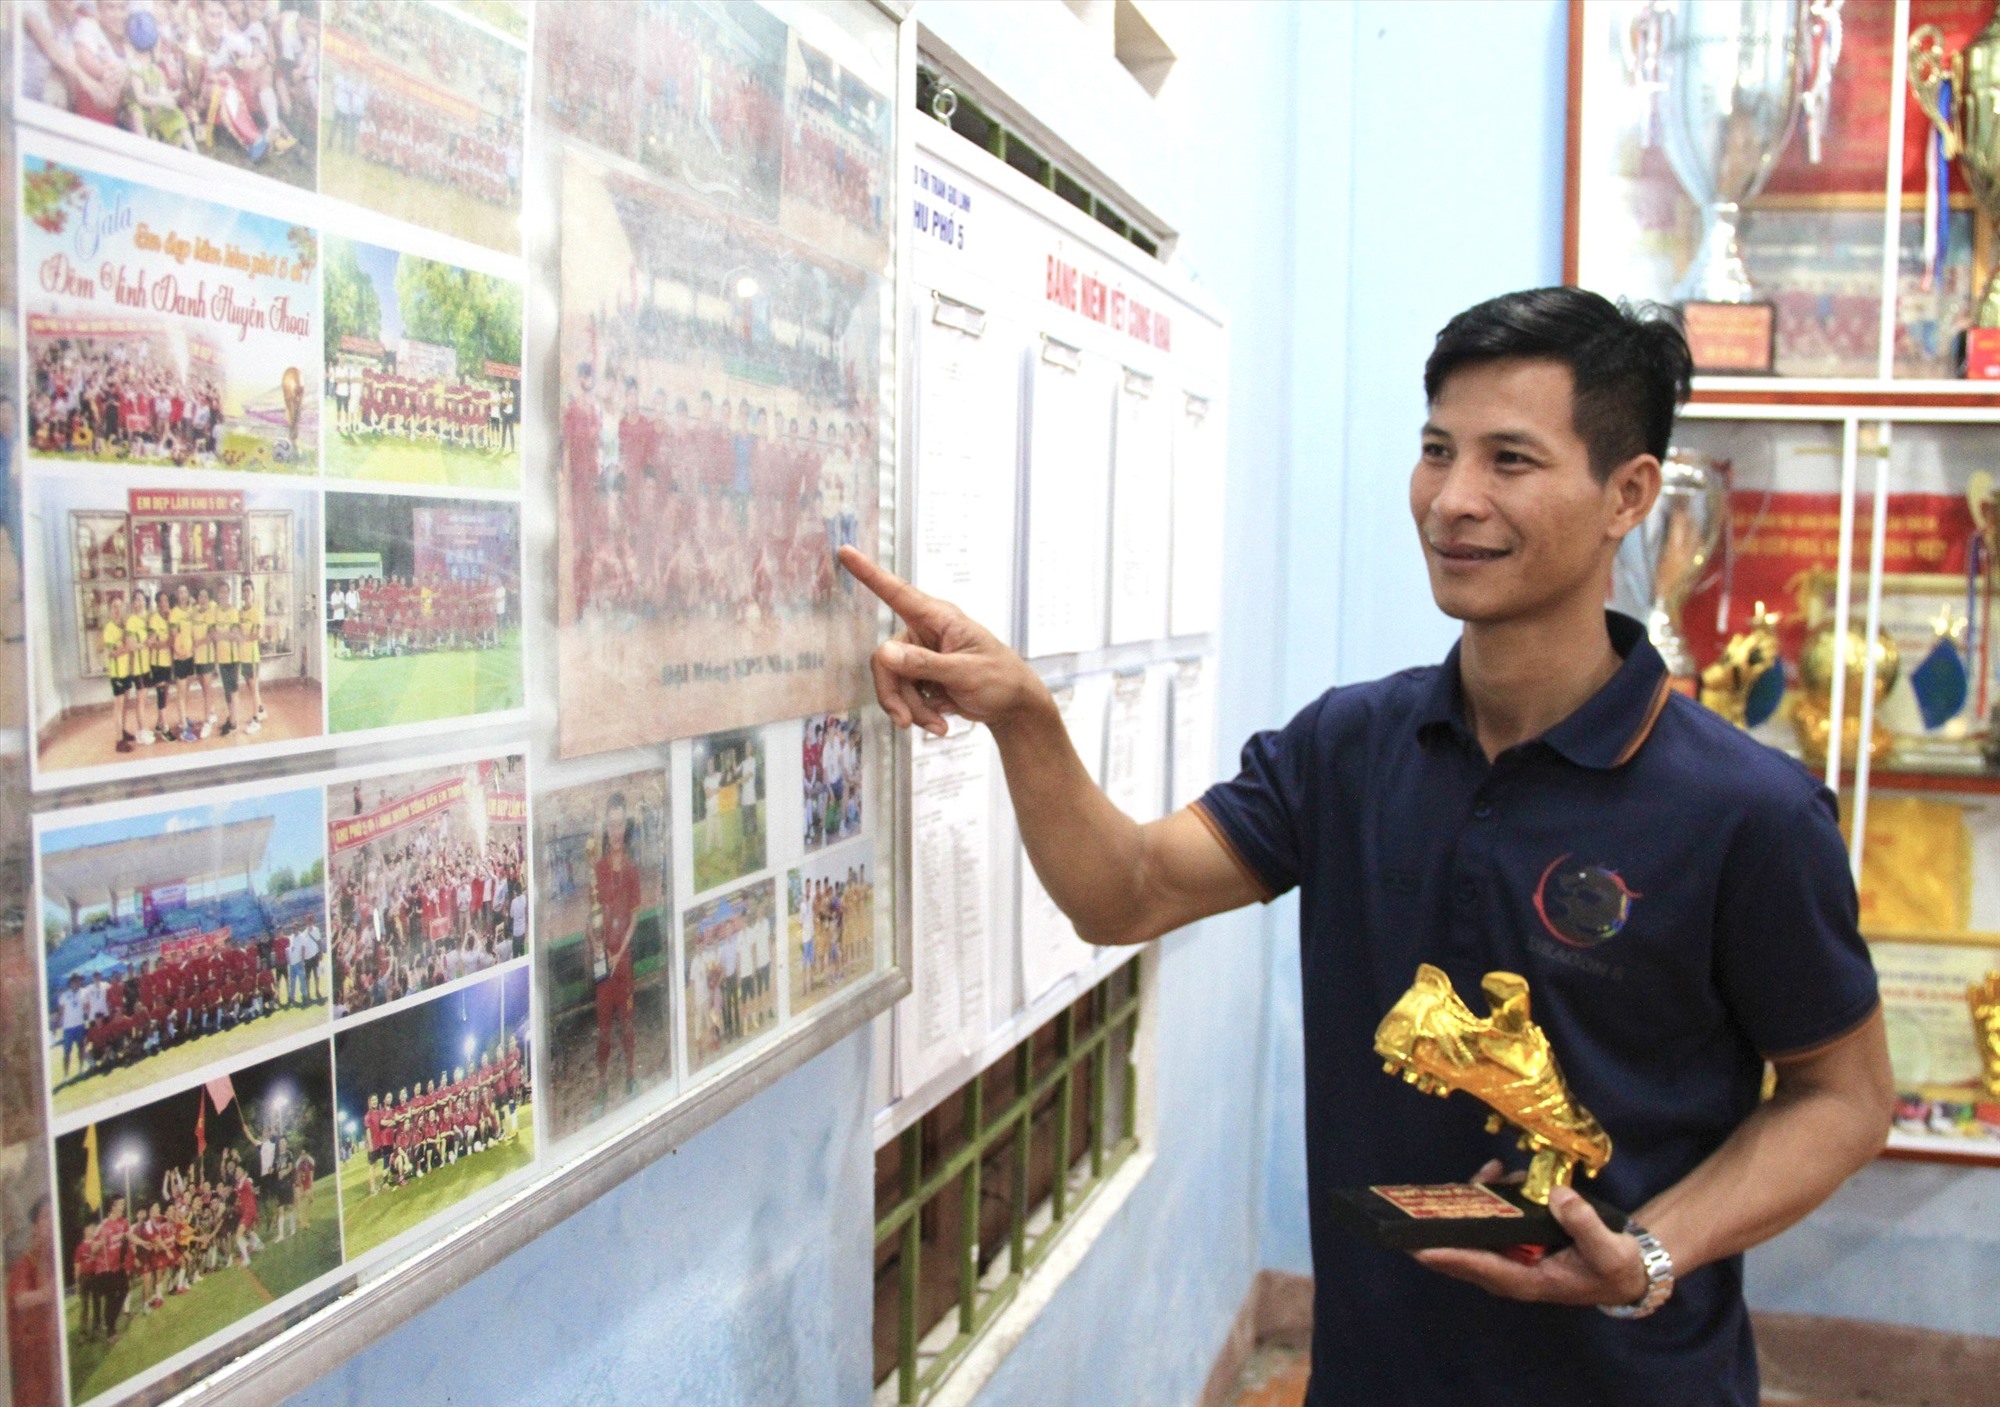 Cầu thủ Lê Phong Phú trưởng thành và nuôi lớn niềm đam mê từ sân bóng đá quê nhà - Ảnh: D.C